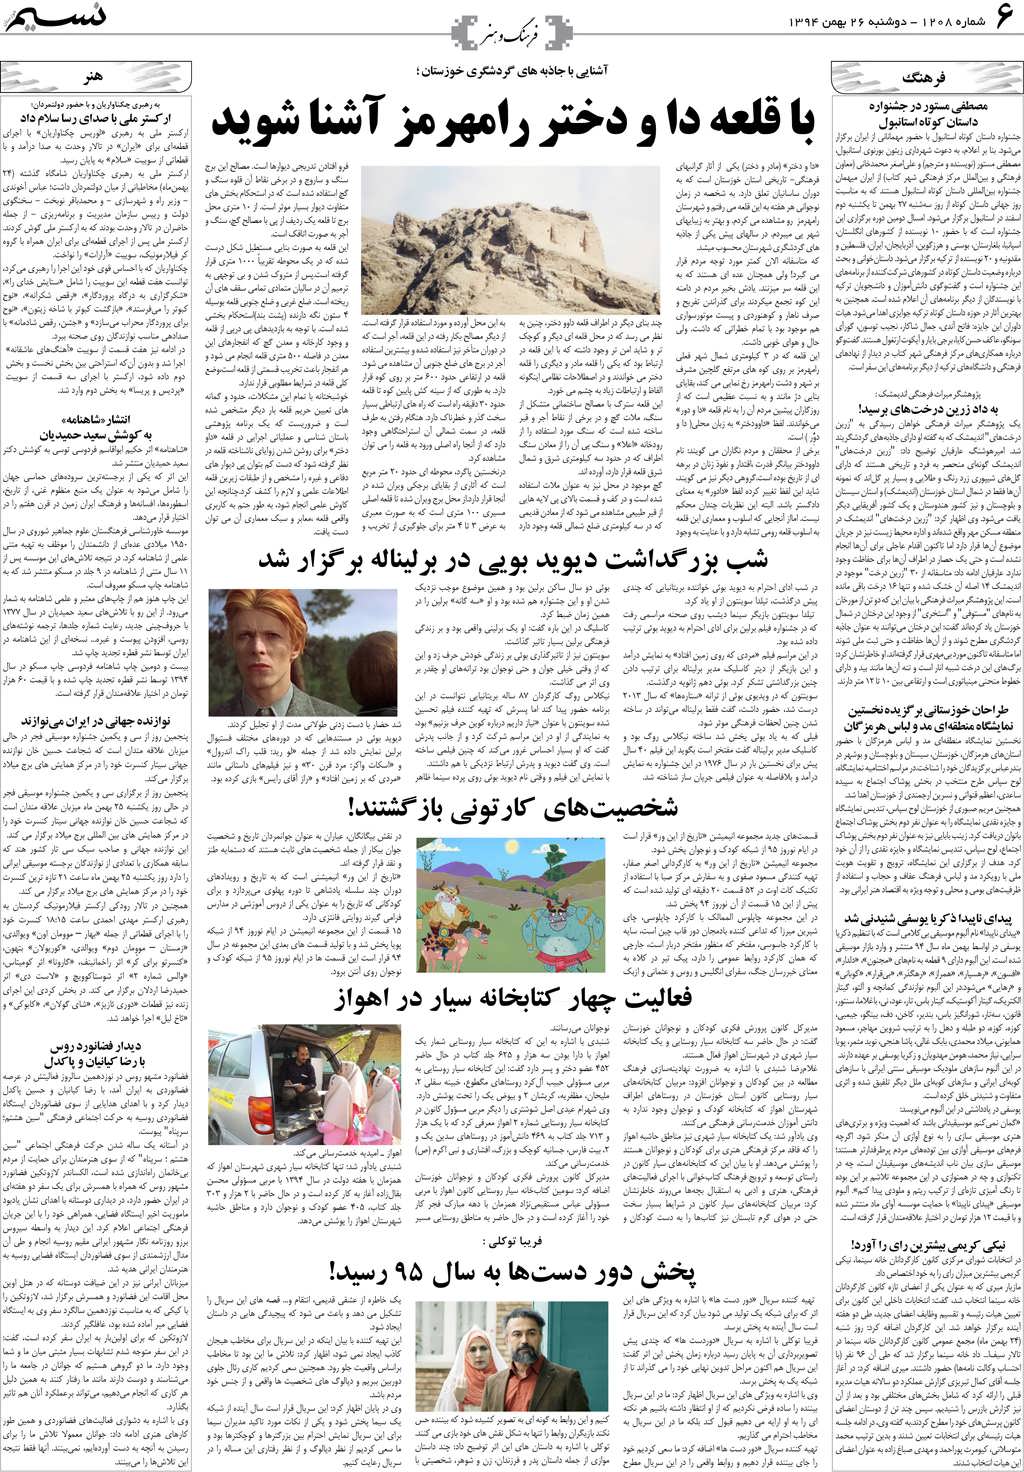 صفحه فرهنگ و هنر روزنامه نسیم شماره 1208